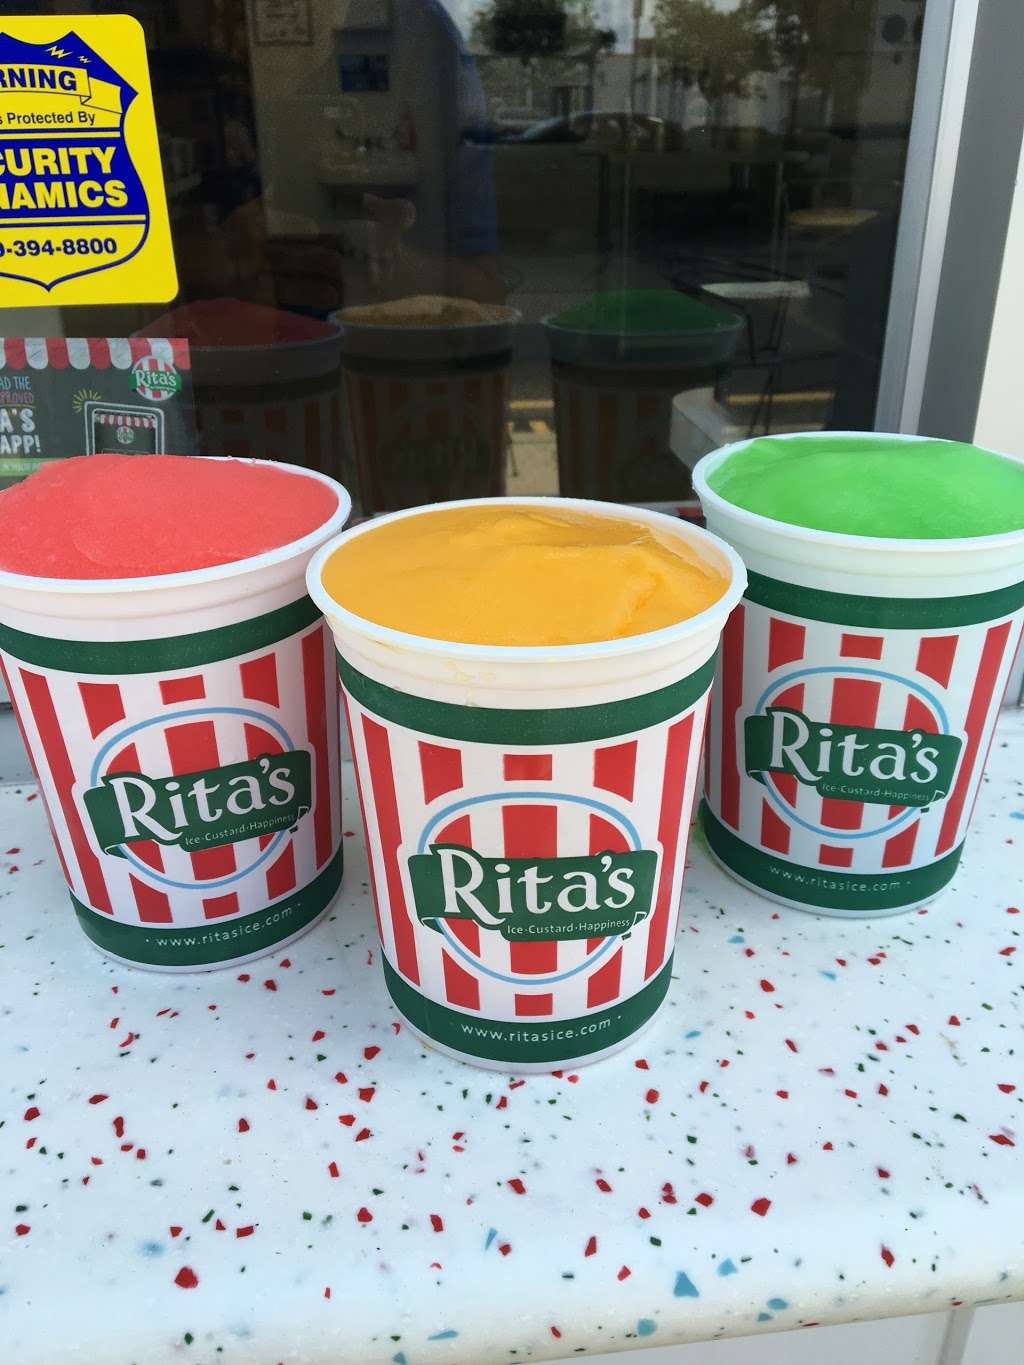 Ritas Italian Ice & Frozen Custard | 2465 S Broad St #F5, Trenton, NJ 08610 | Phone: (609) 888-0800